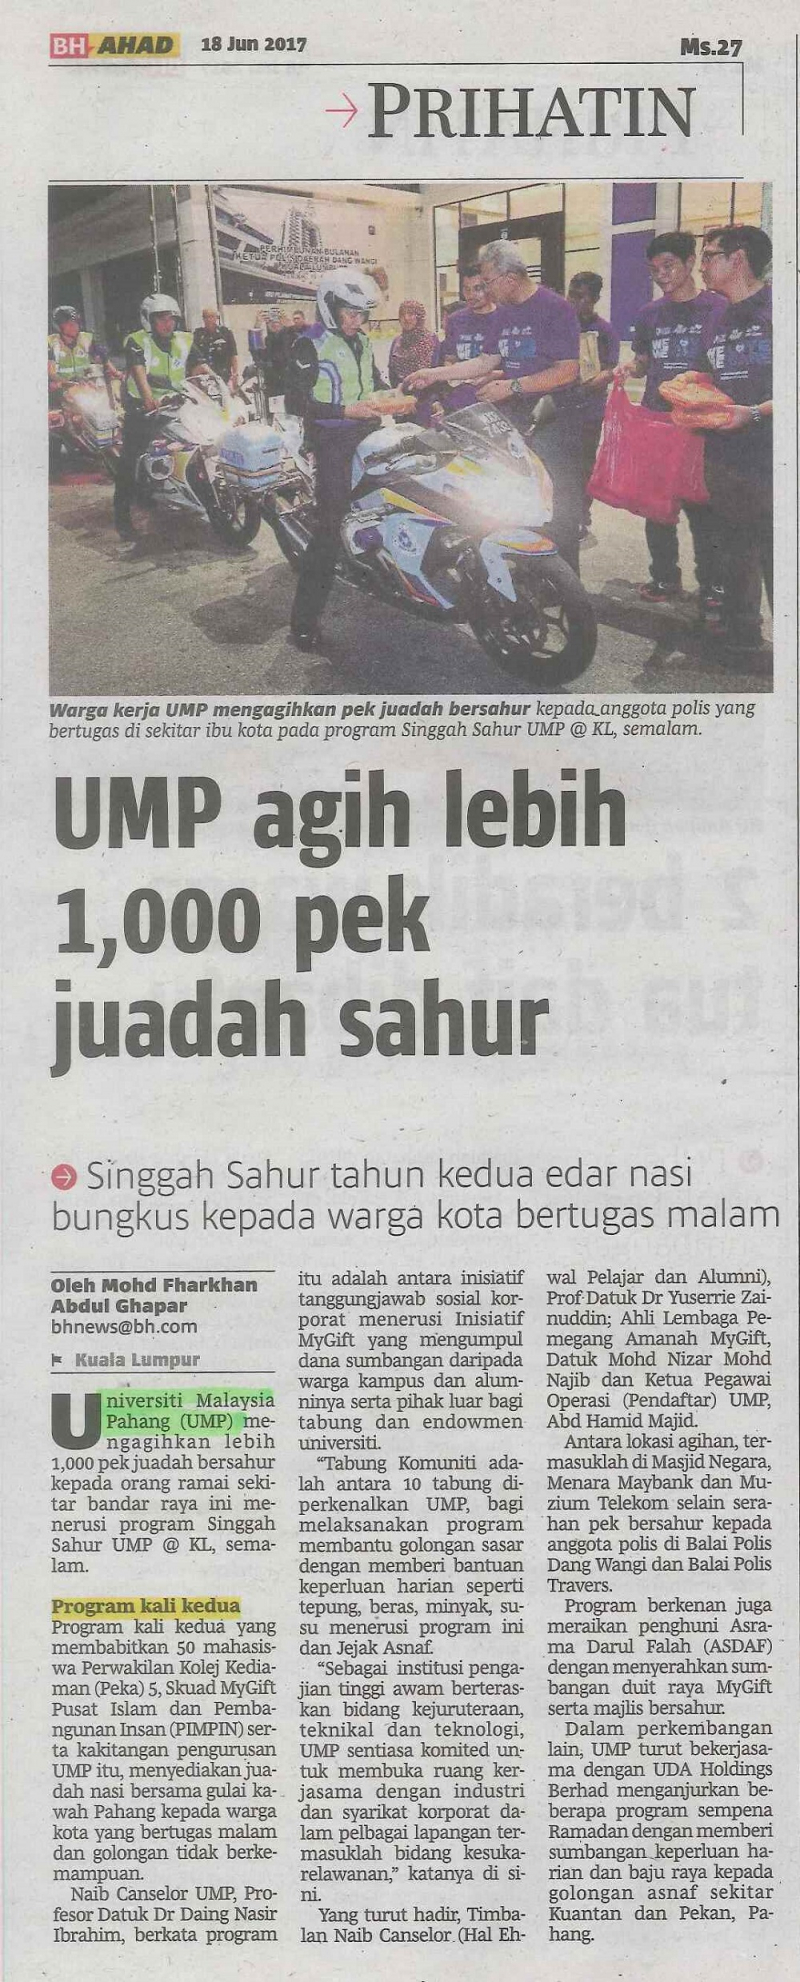 UMP agih lebih 1,000 pek juadah sahur